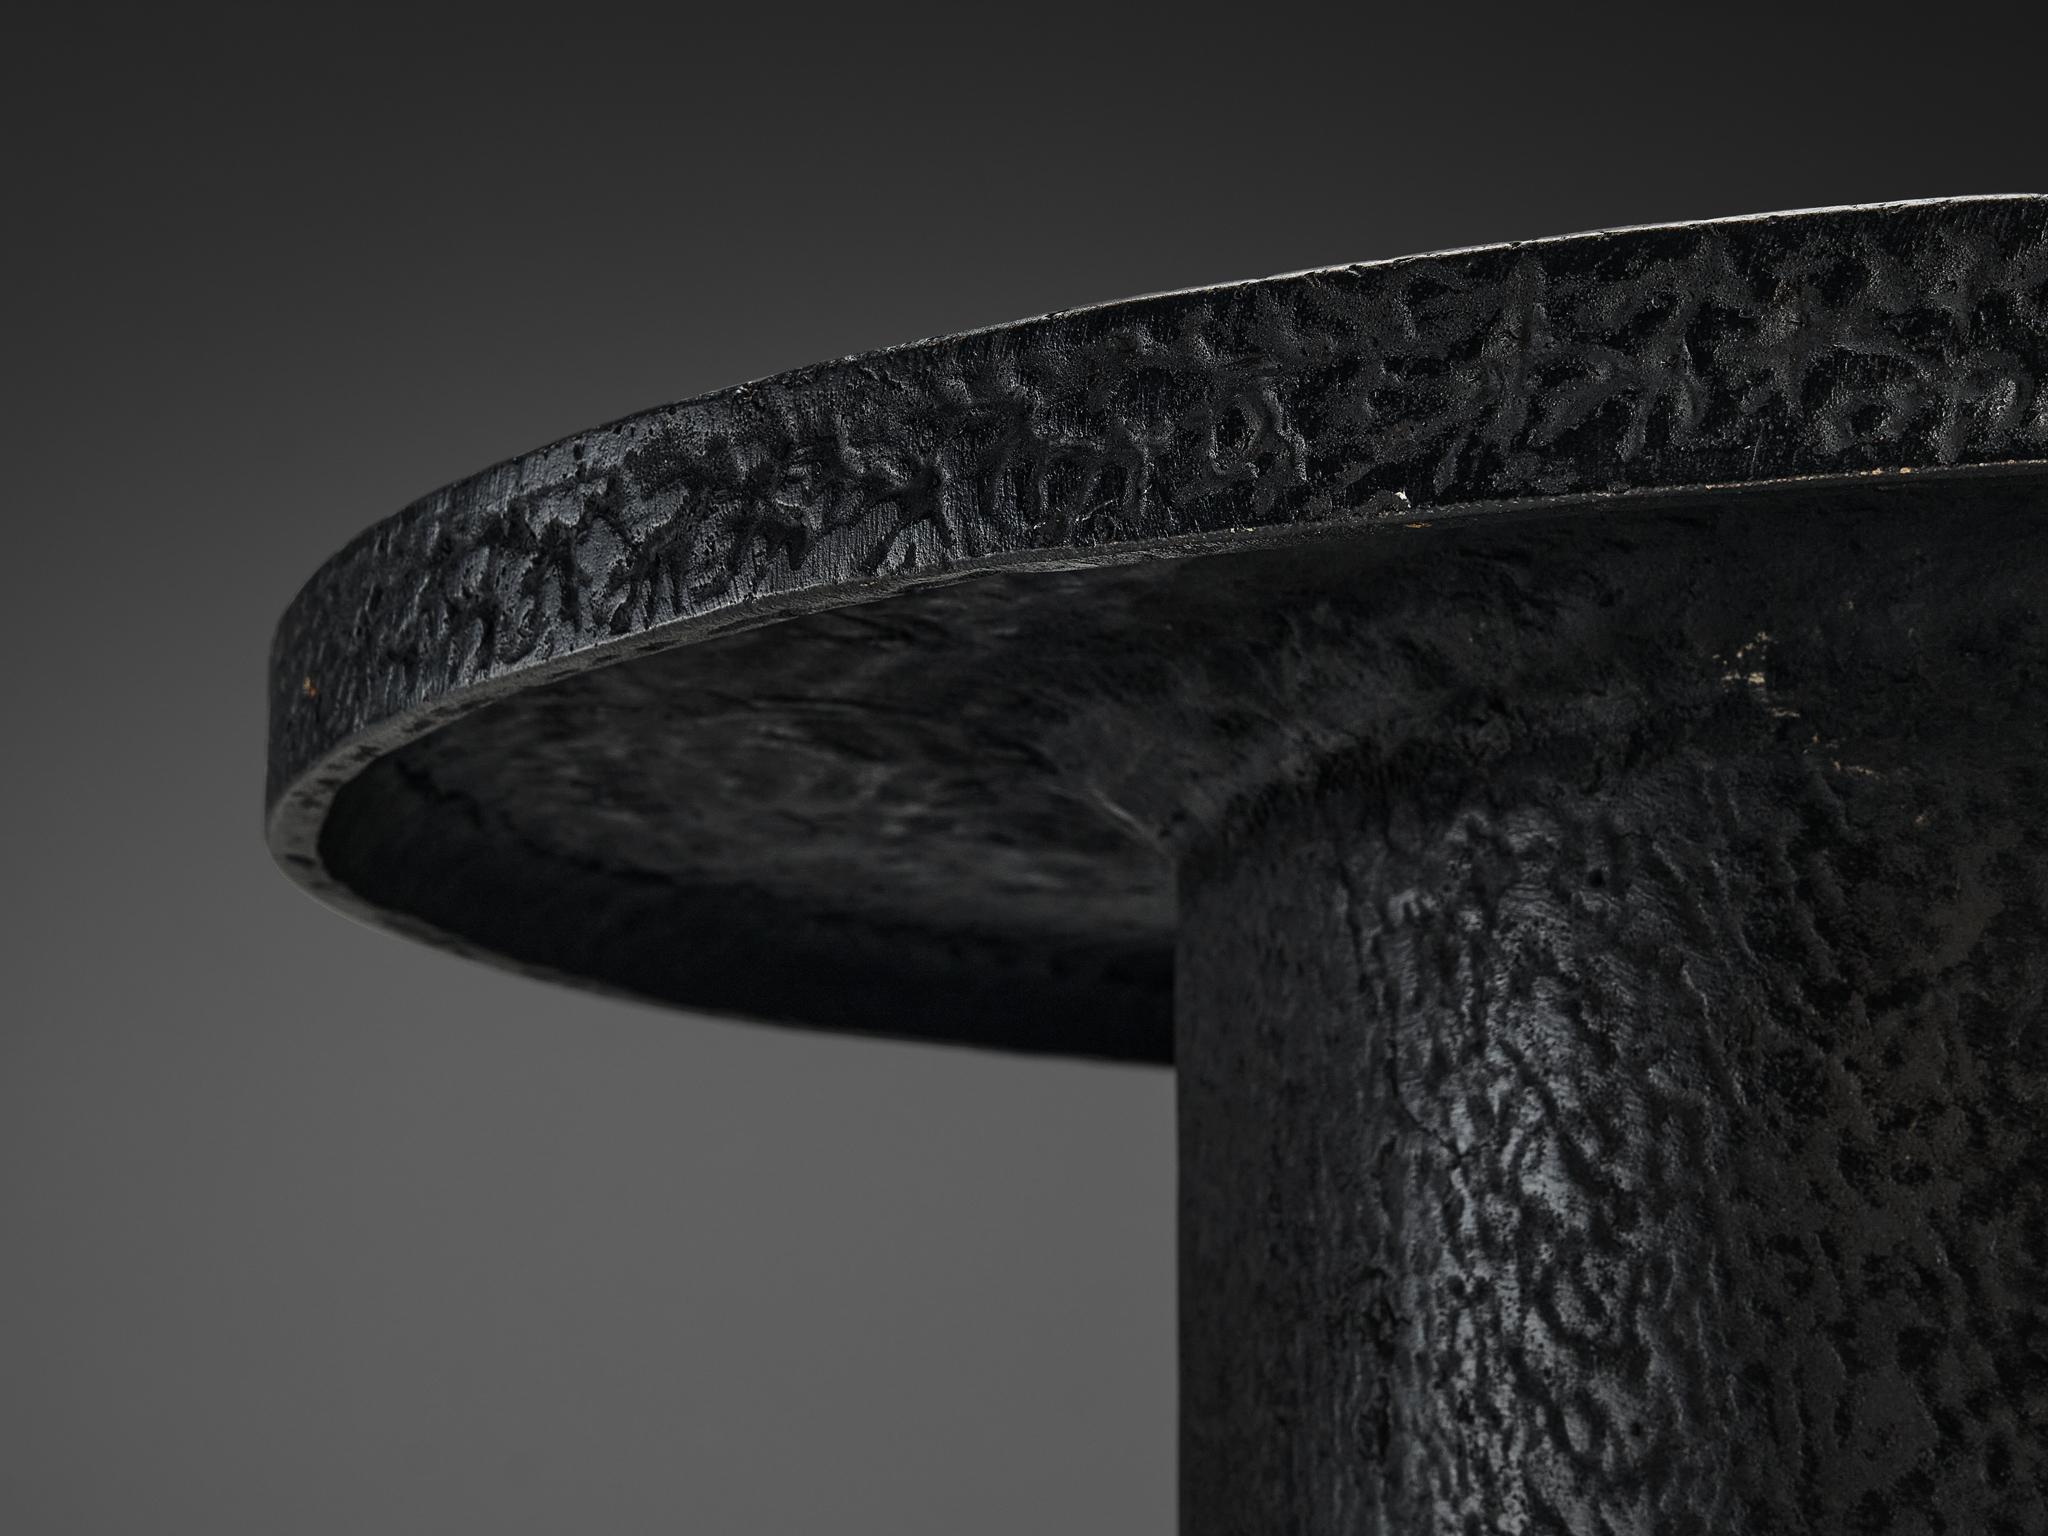 European Brutalist Round Coffee Table in Black Stone Look Resin 